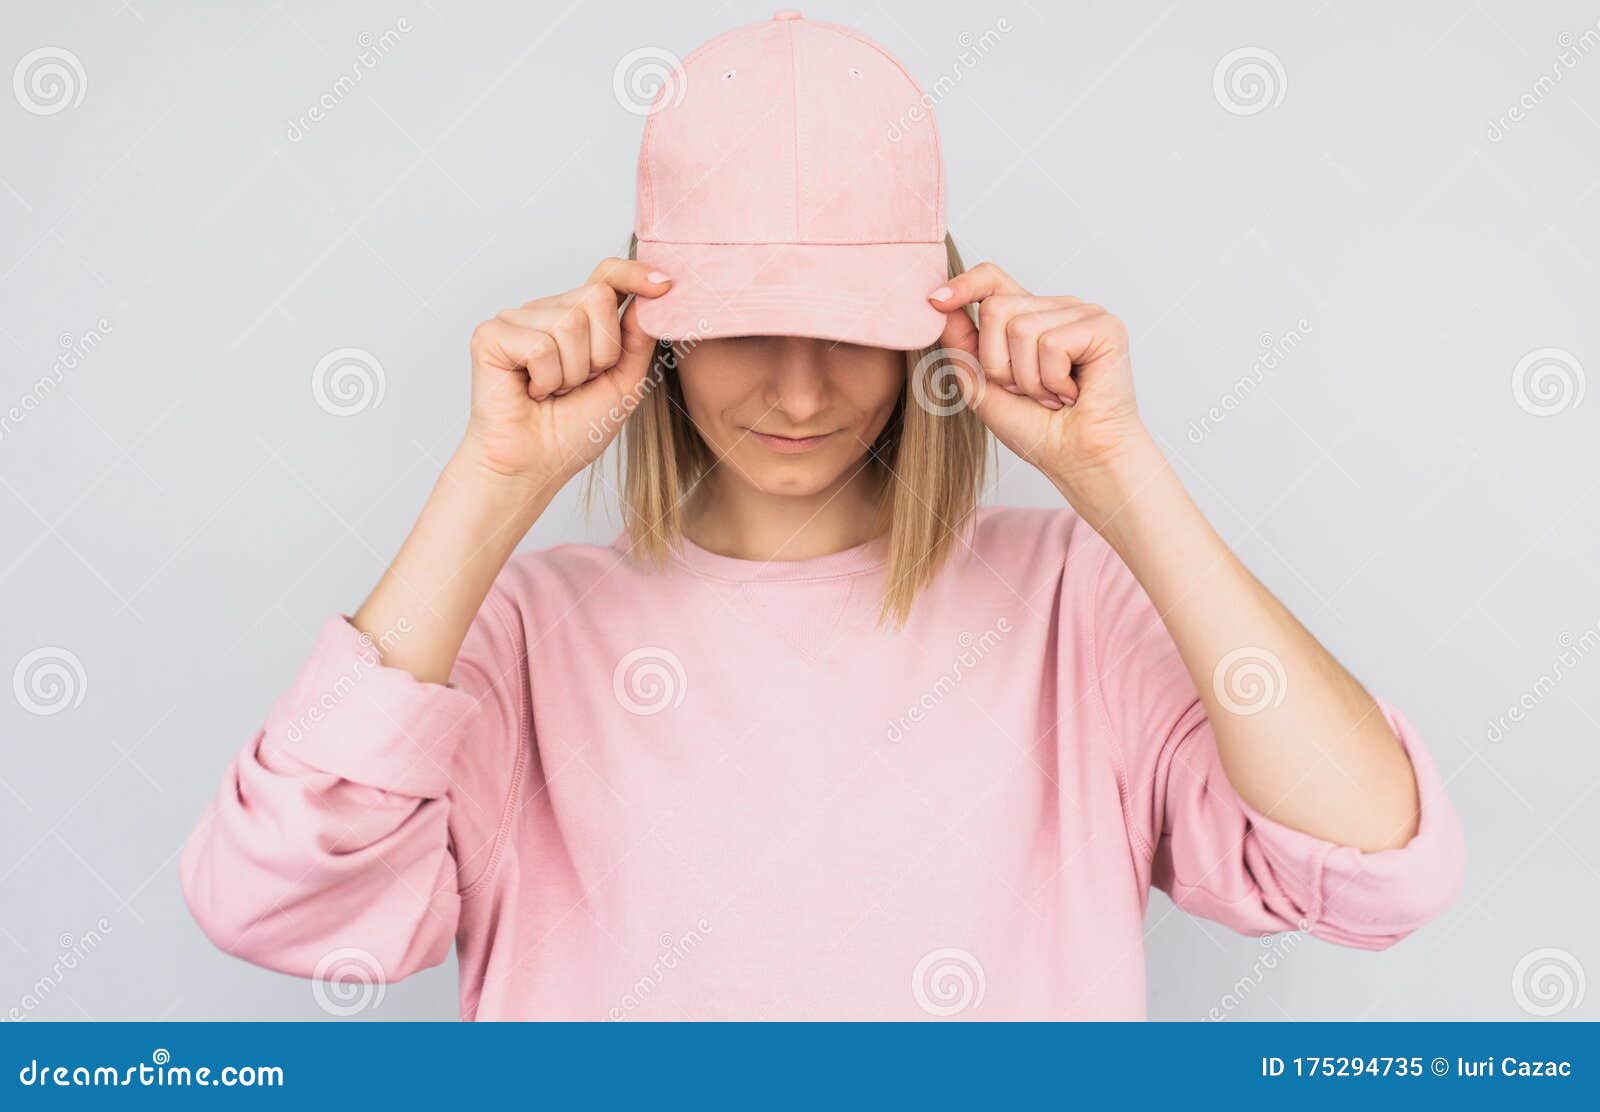 cap wearing blonde pink